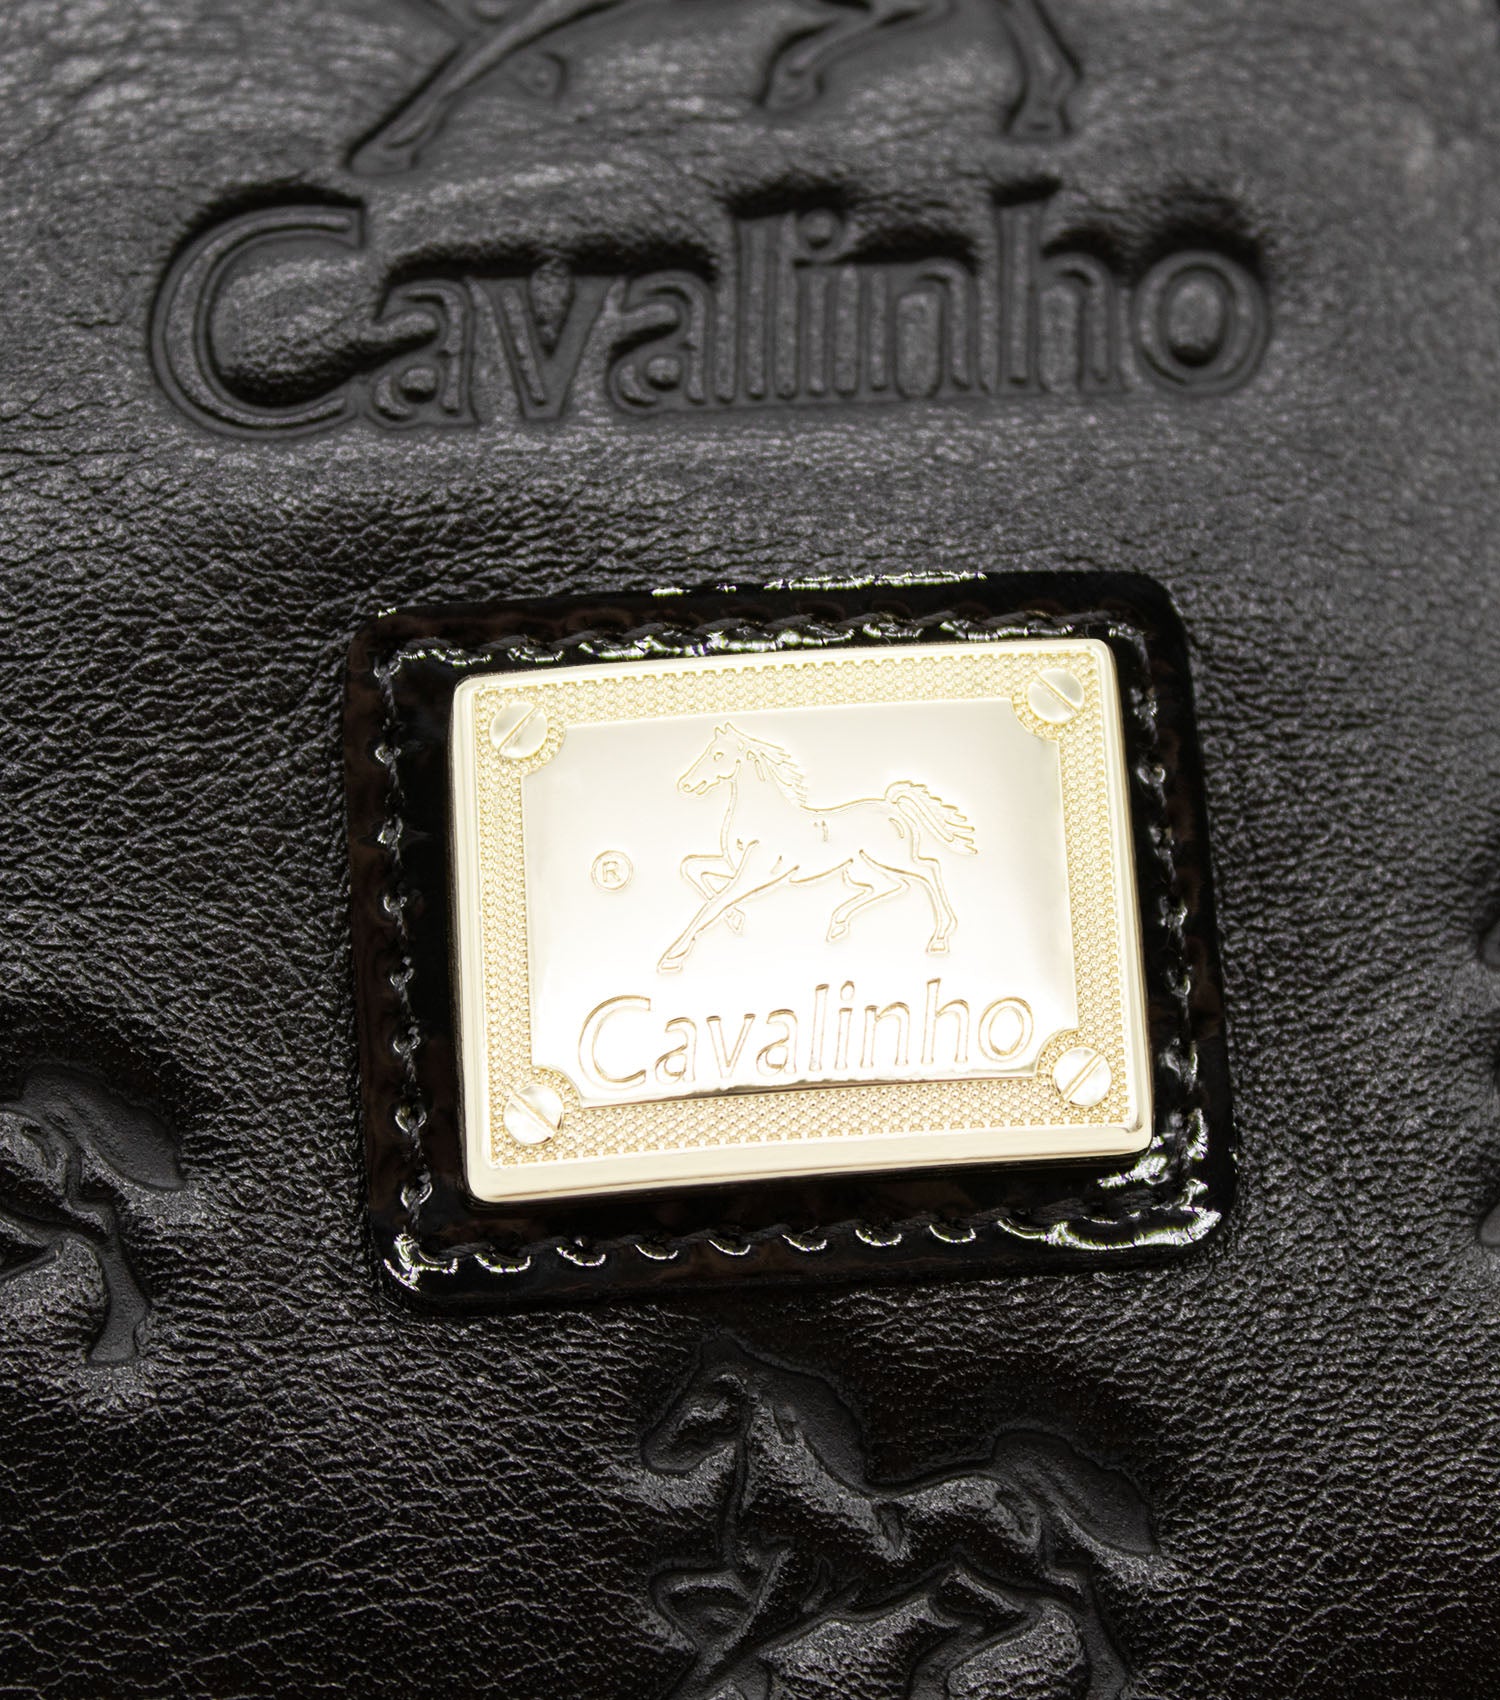 Cavalinho Royal Crossbody Bag - Black and White - 18390273.21_P05